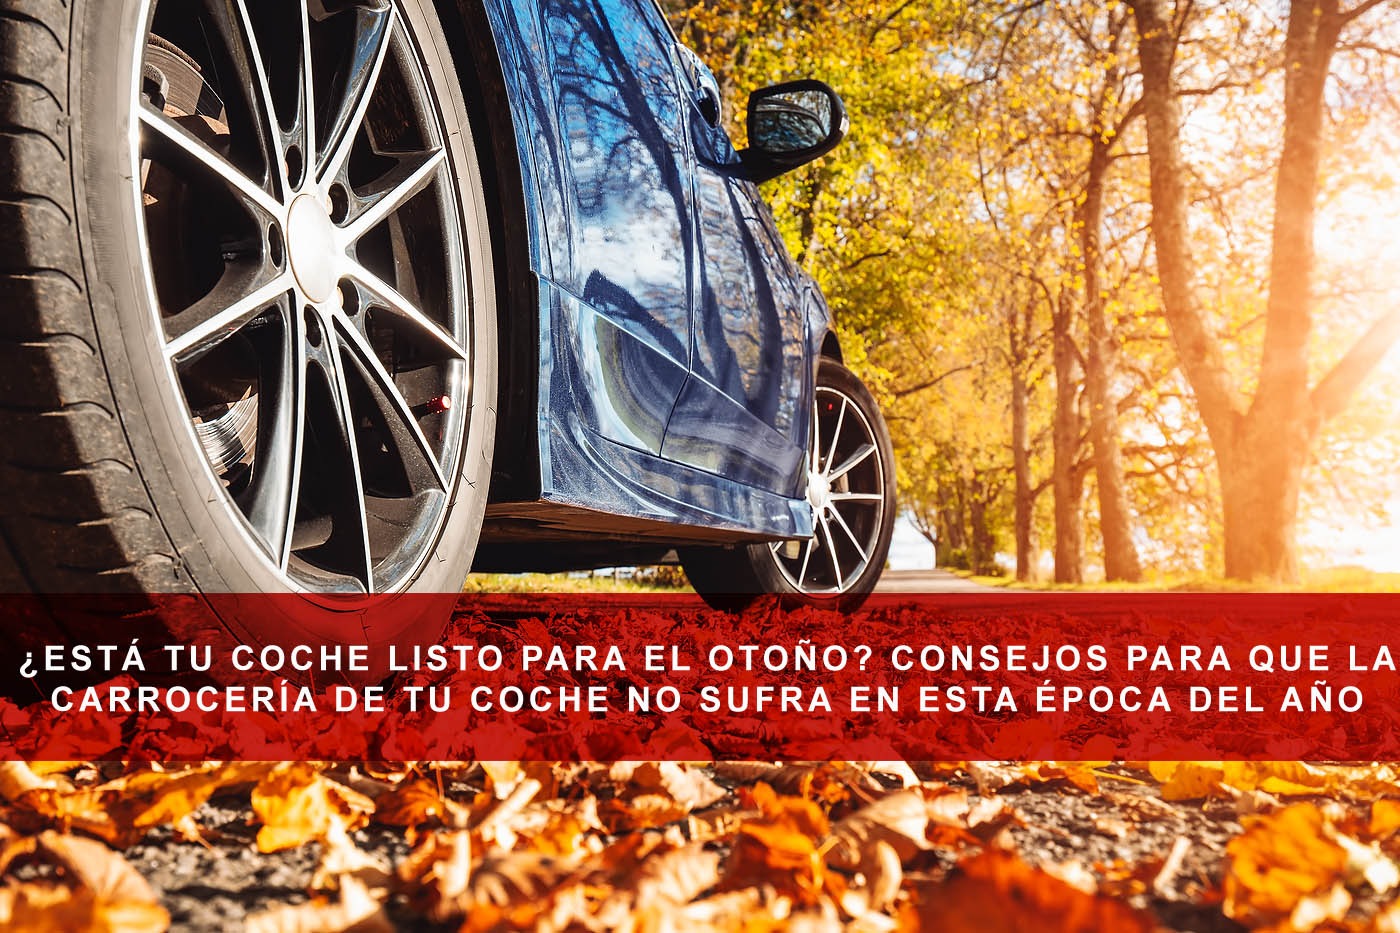 ¿Está tu coche listo para el otoño? Consejos para que la carrocería de tu coche no sufra en esta época del año